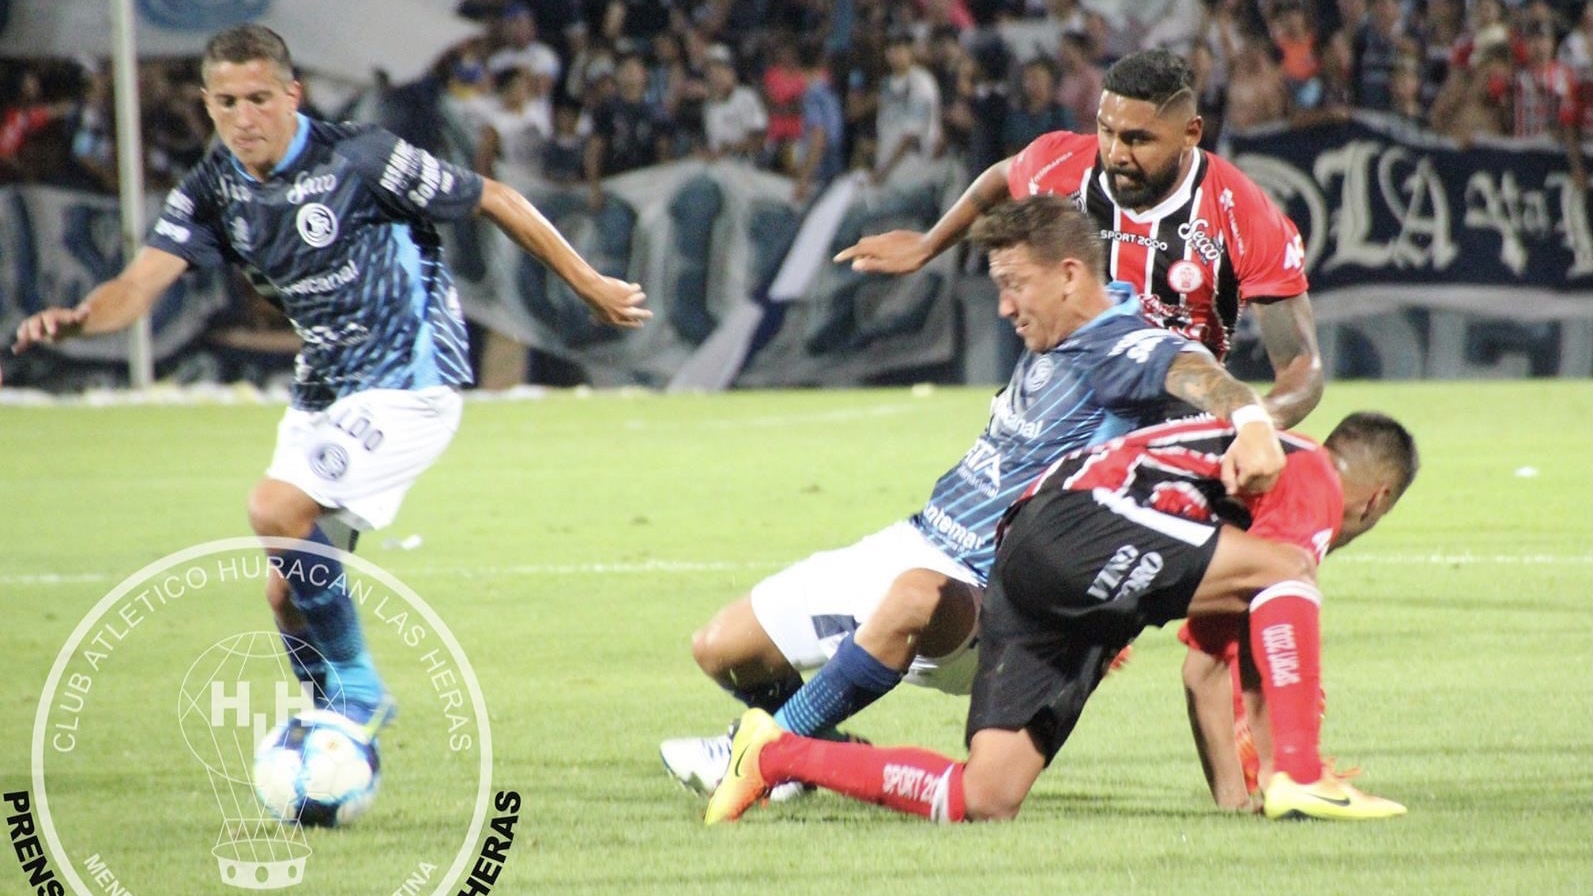 Huracán Las Heras e Independiente Rivadavia se enfrentarían en un amistoso